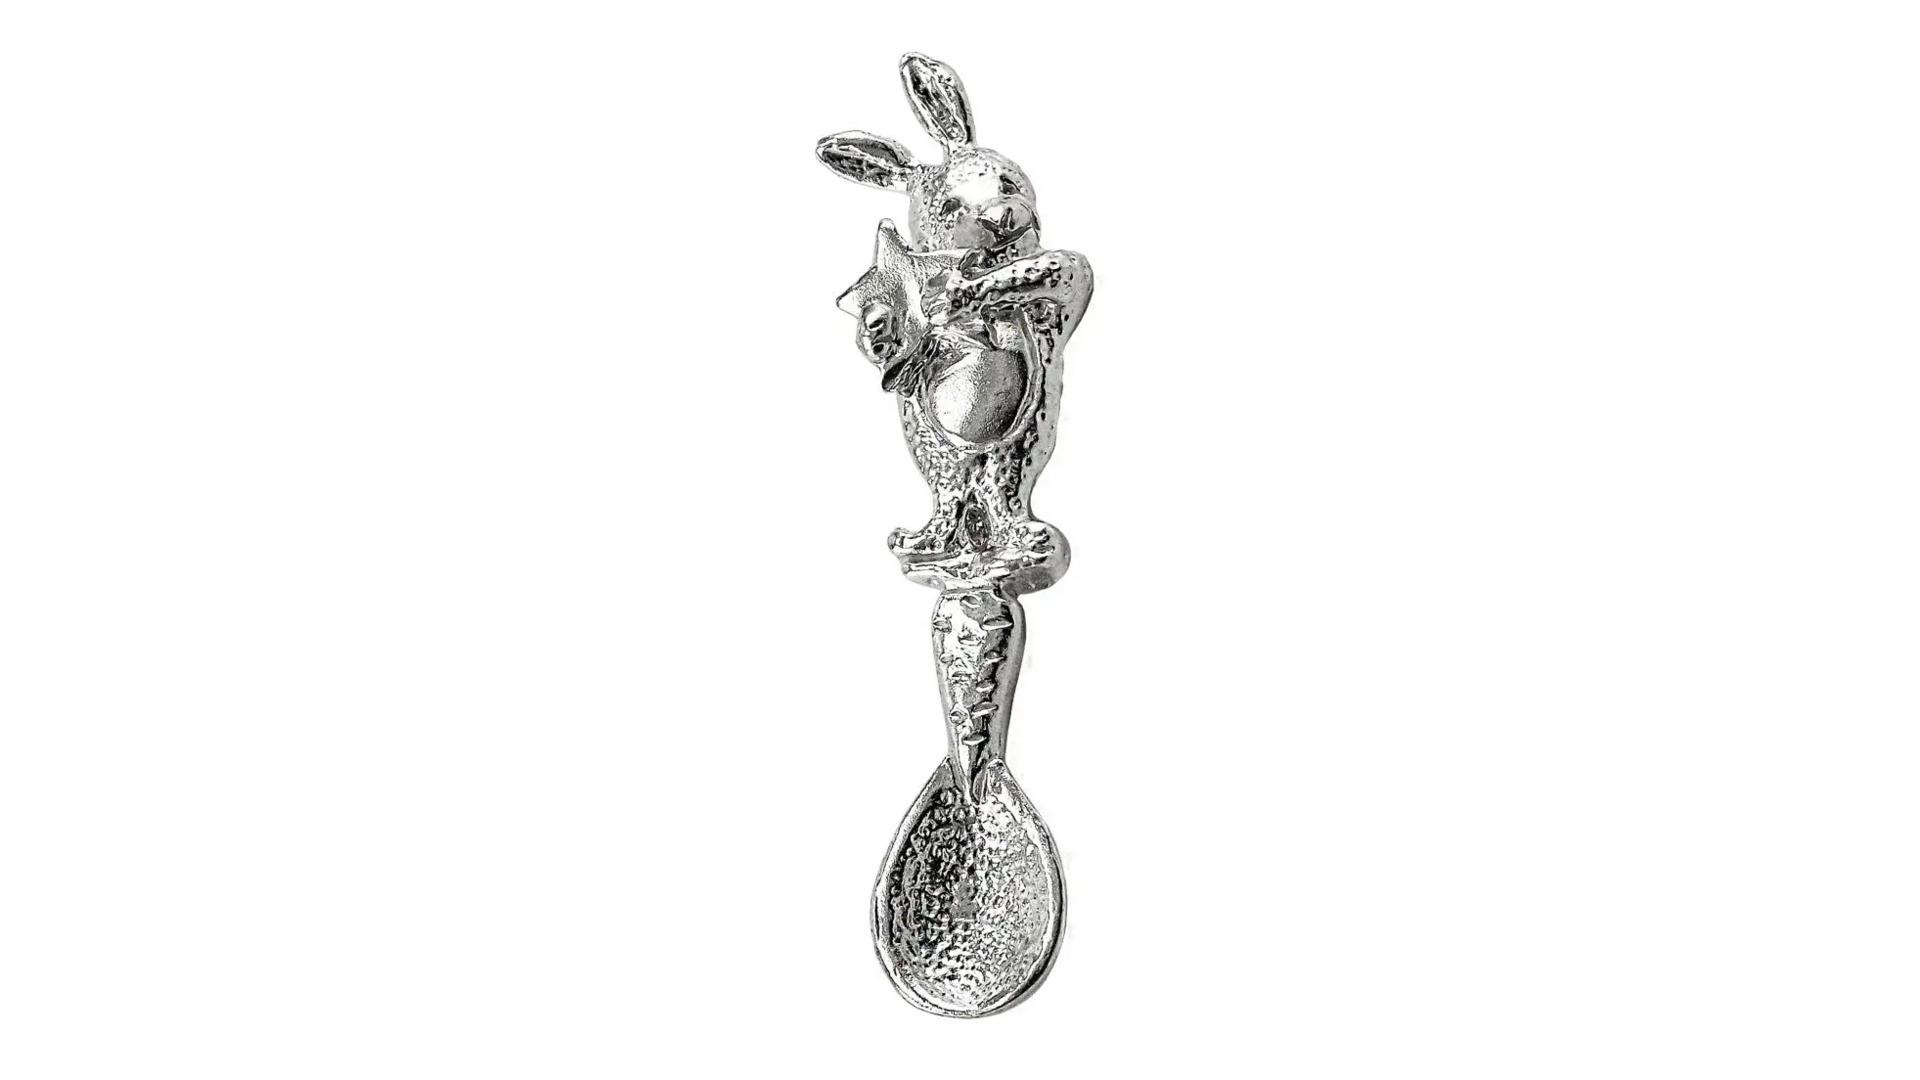 Ложка сувенирная АргентА Кролик 5,59 г, серебро 925